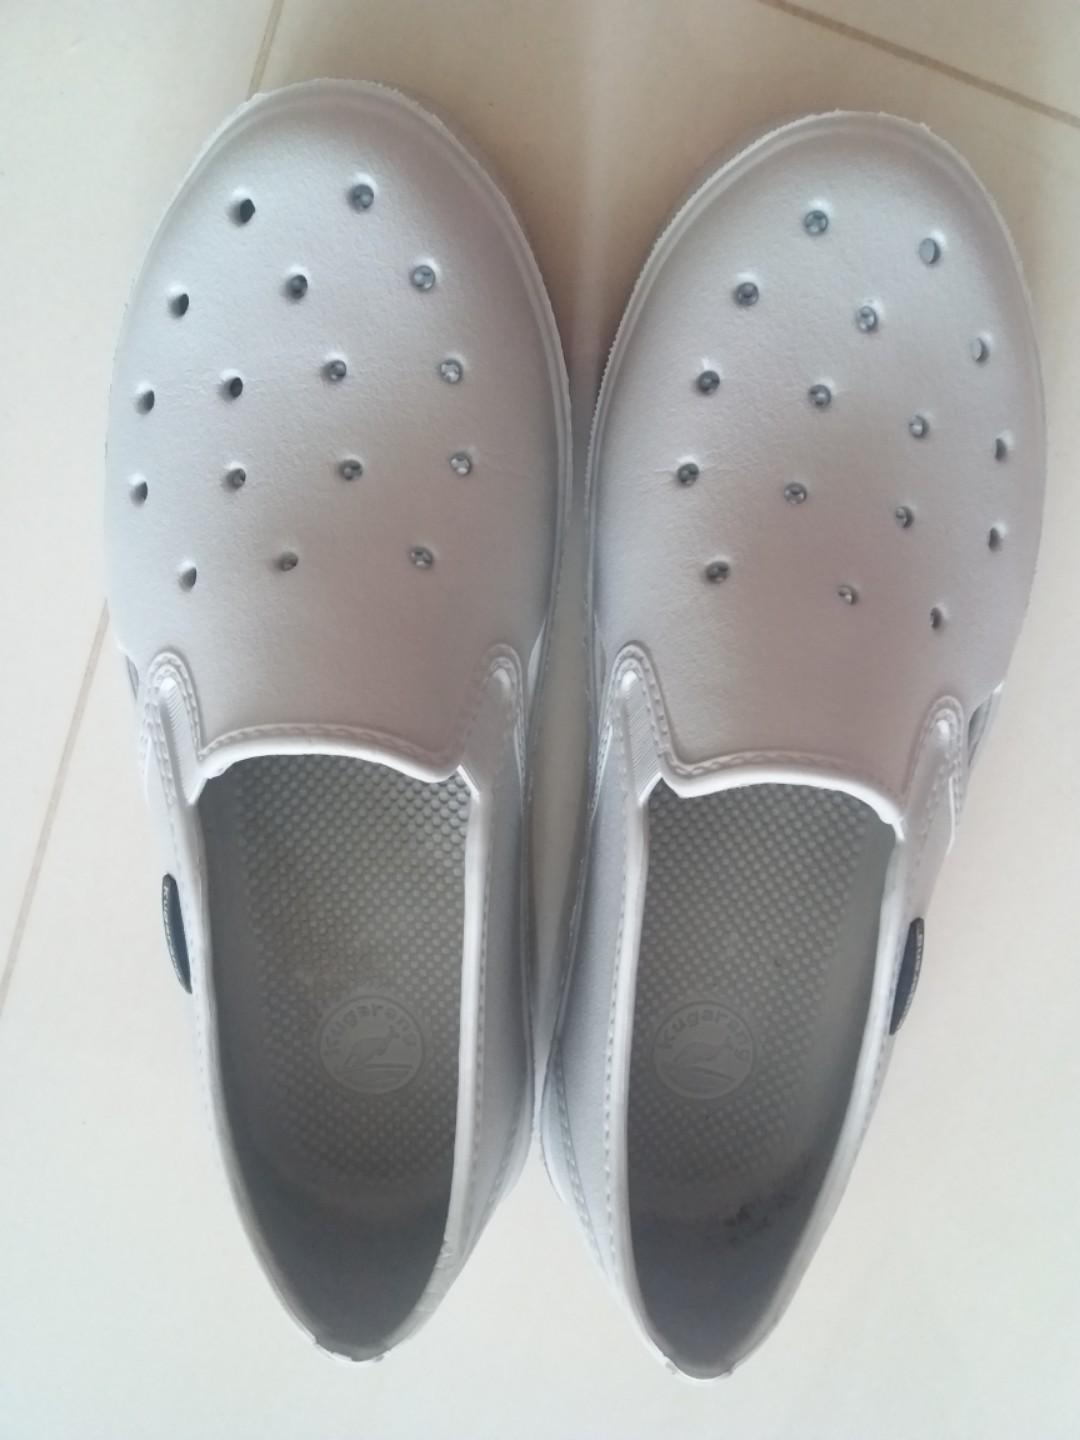 plastic shoes like crocs